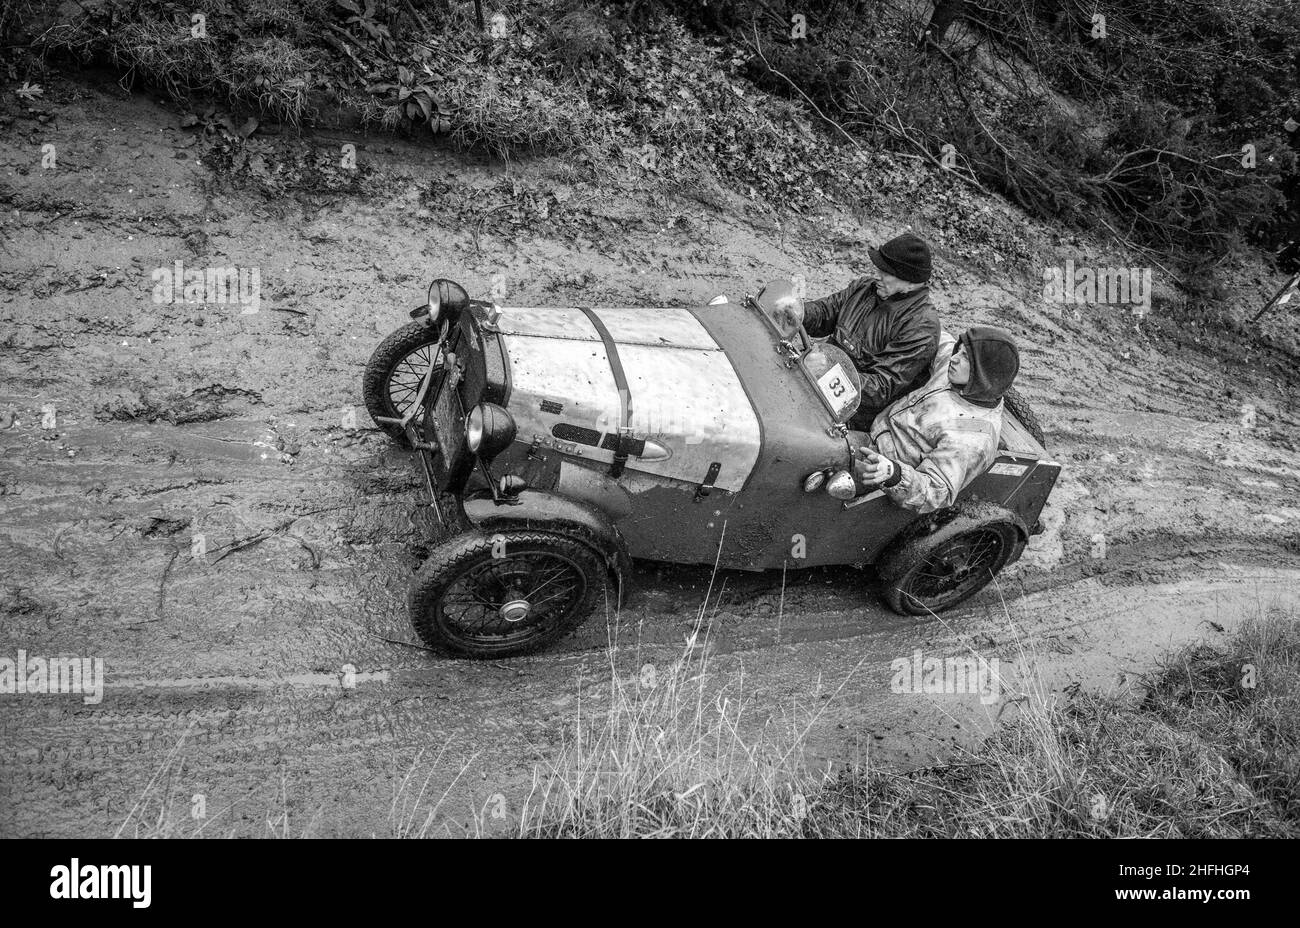 Die Mitglieder des Pre war Austin 7 Car Club, die an der Dave Wilcox Memorial Hill Trials-Veranstaltung unter sehr nassen, rutschigen und schlammigen Bedingungen teilnehmen. Stockfoto